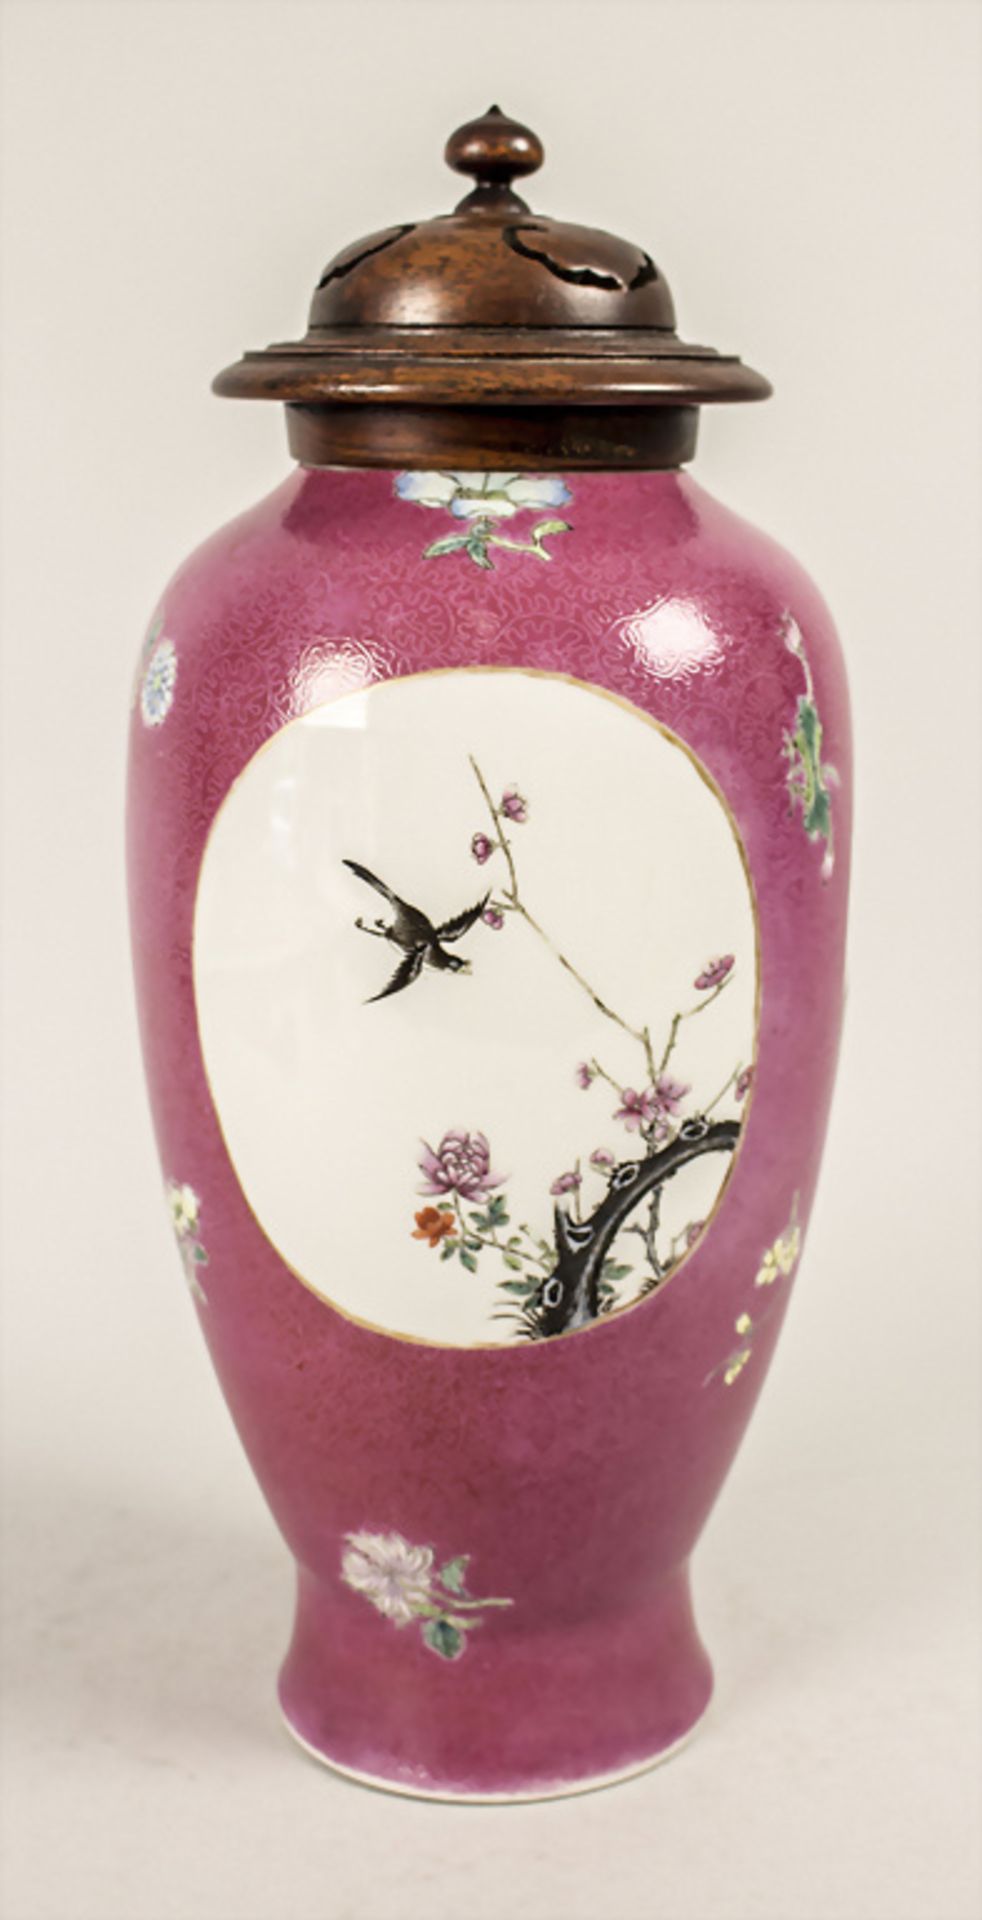 Ziervase / A decorative vase, China, Qing Dynastie (1644-1911) - Bild 4 aus 7